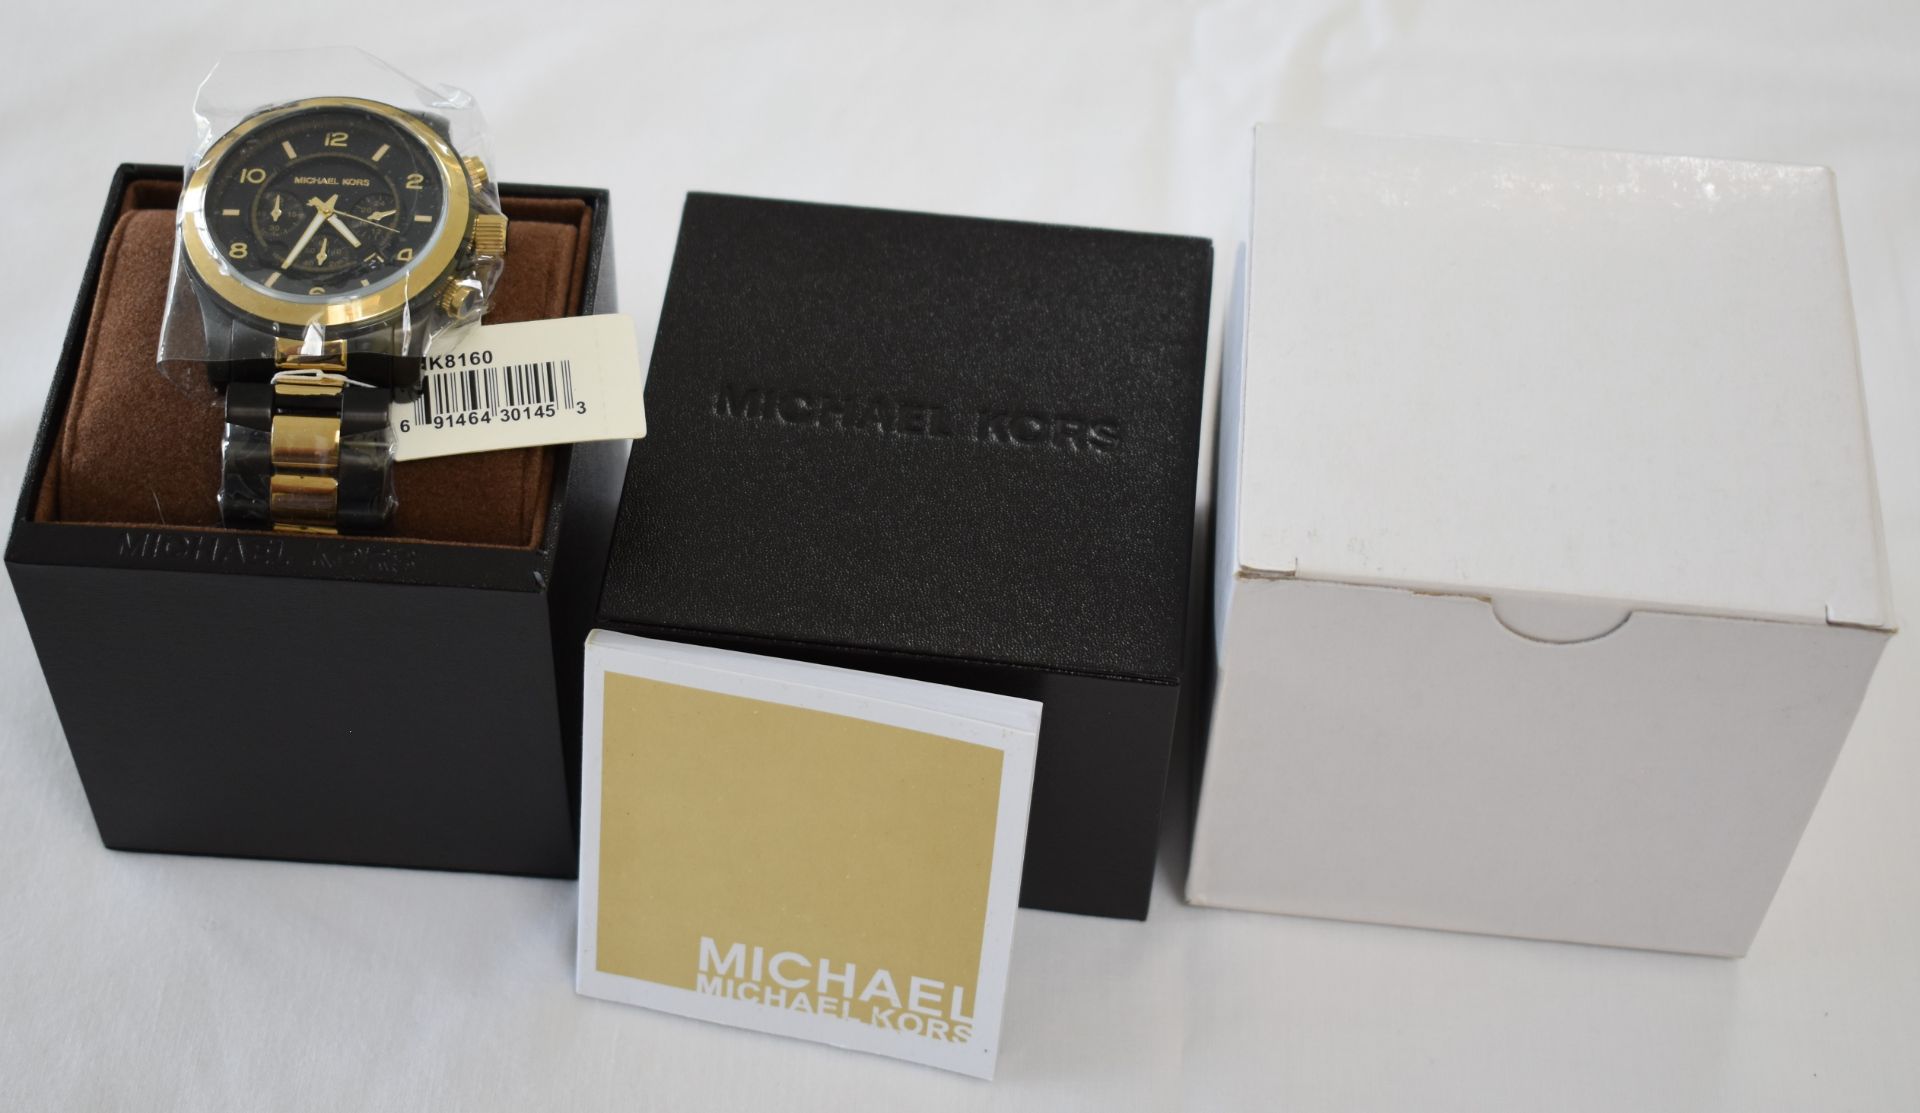 Michael Kors MK8160 Men's Watch